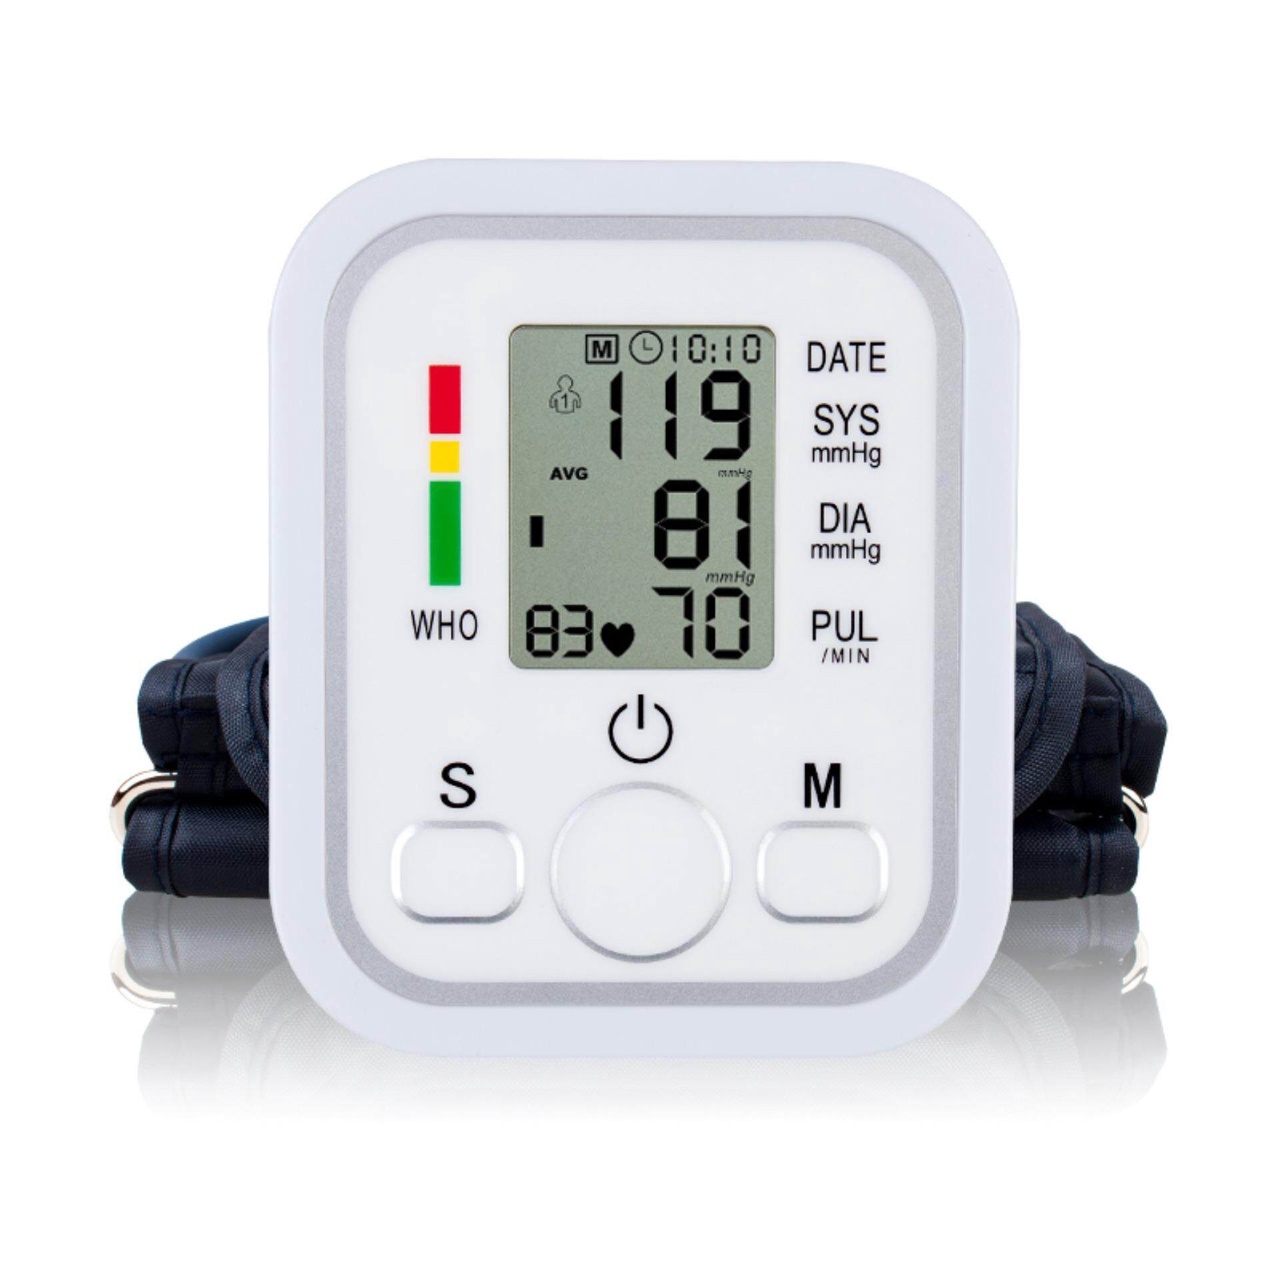 Измеритель давления Electronic Blood Pressure Monitor Arm Style с манжетой 22-32 см - купить в Opt.net, цена на Мегамаркет